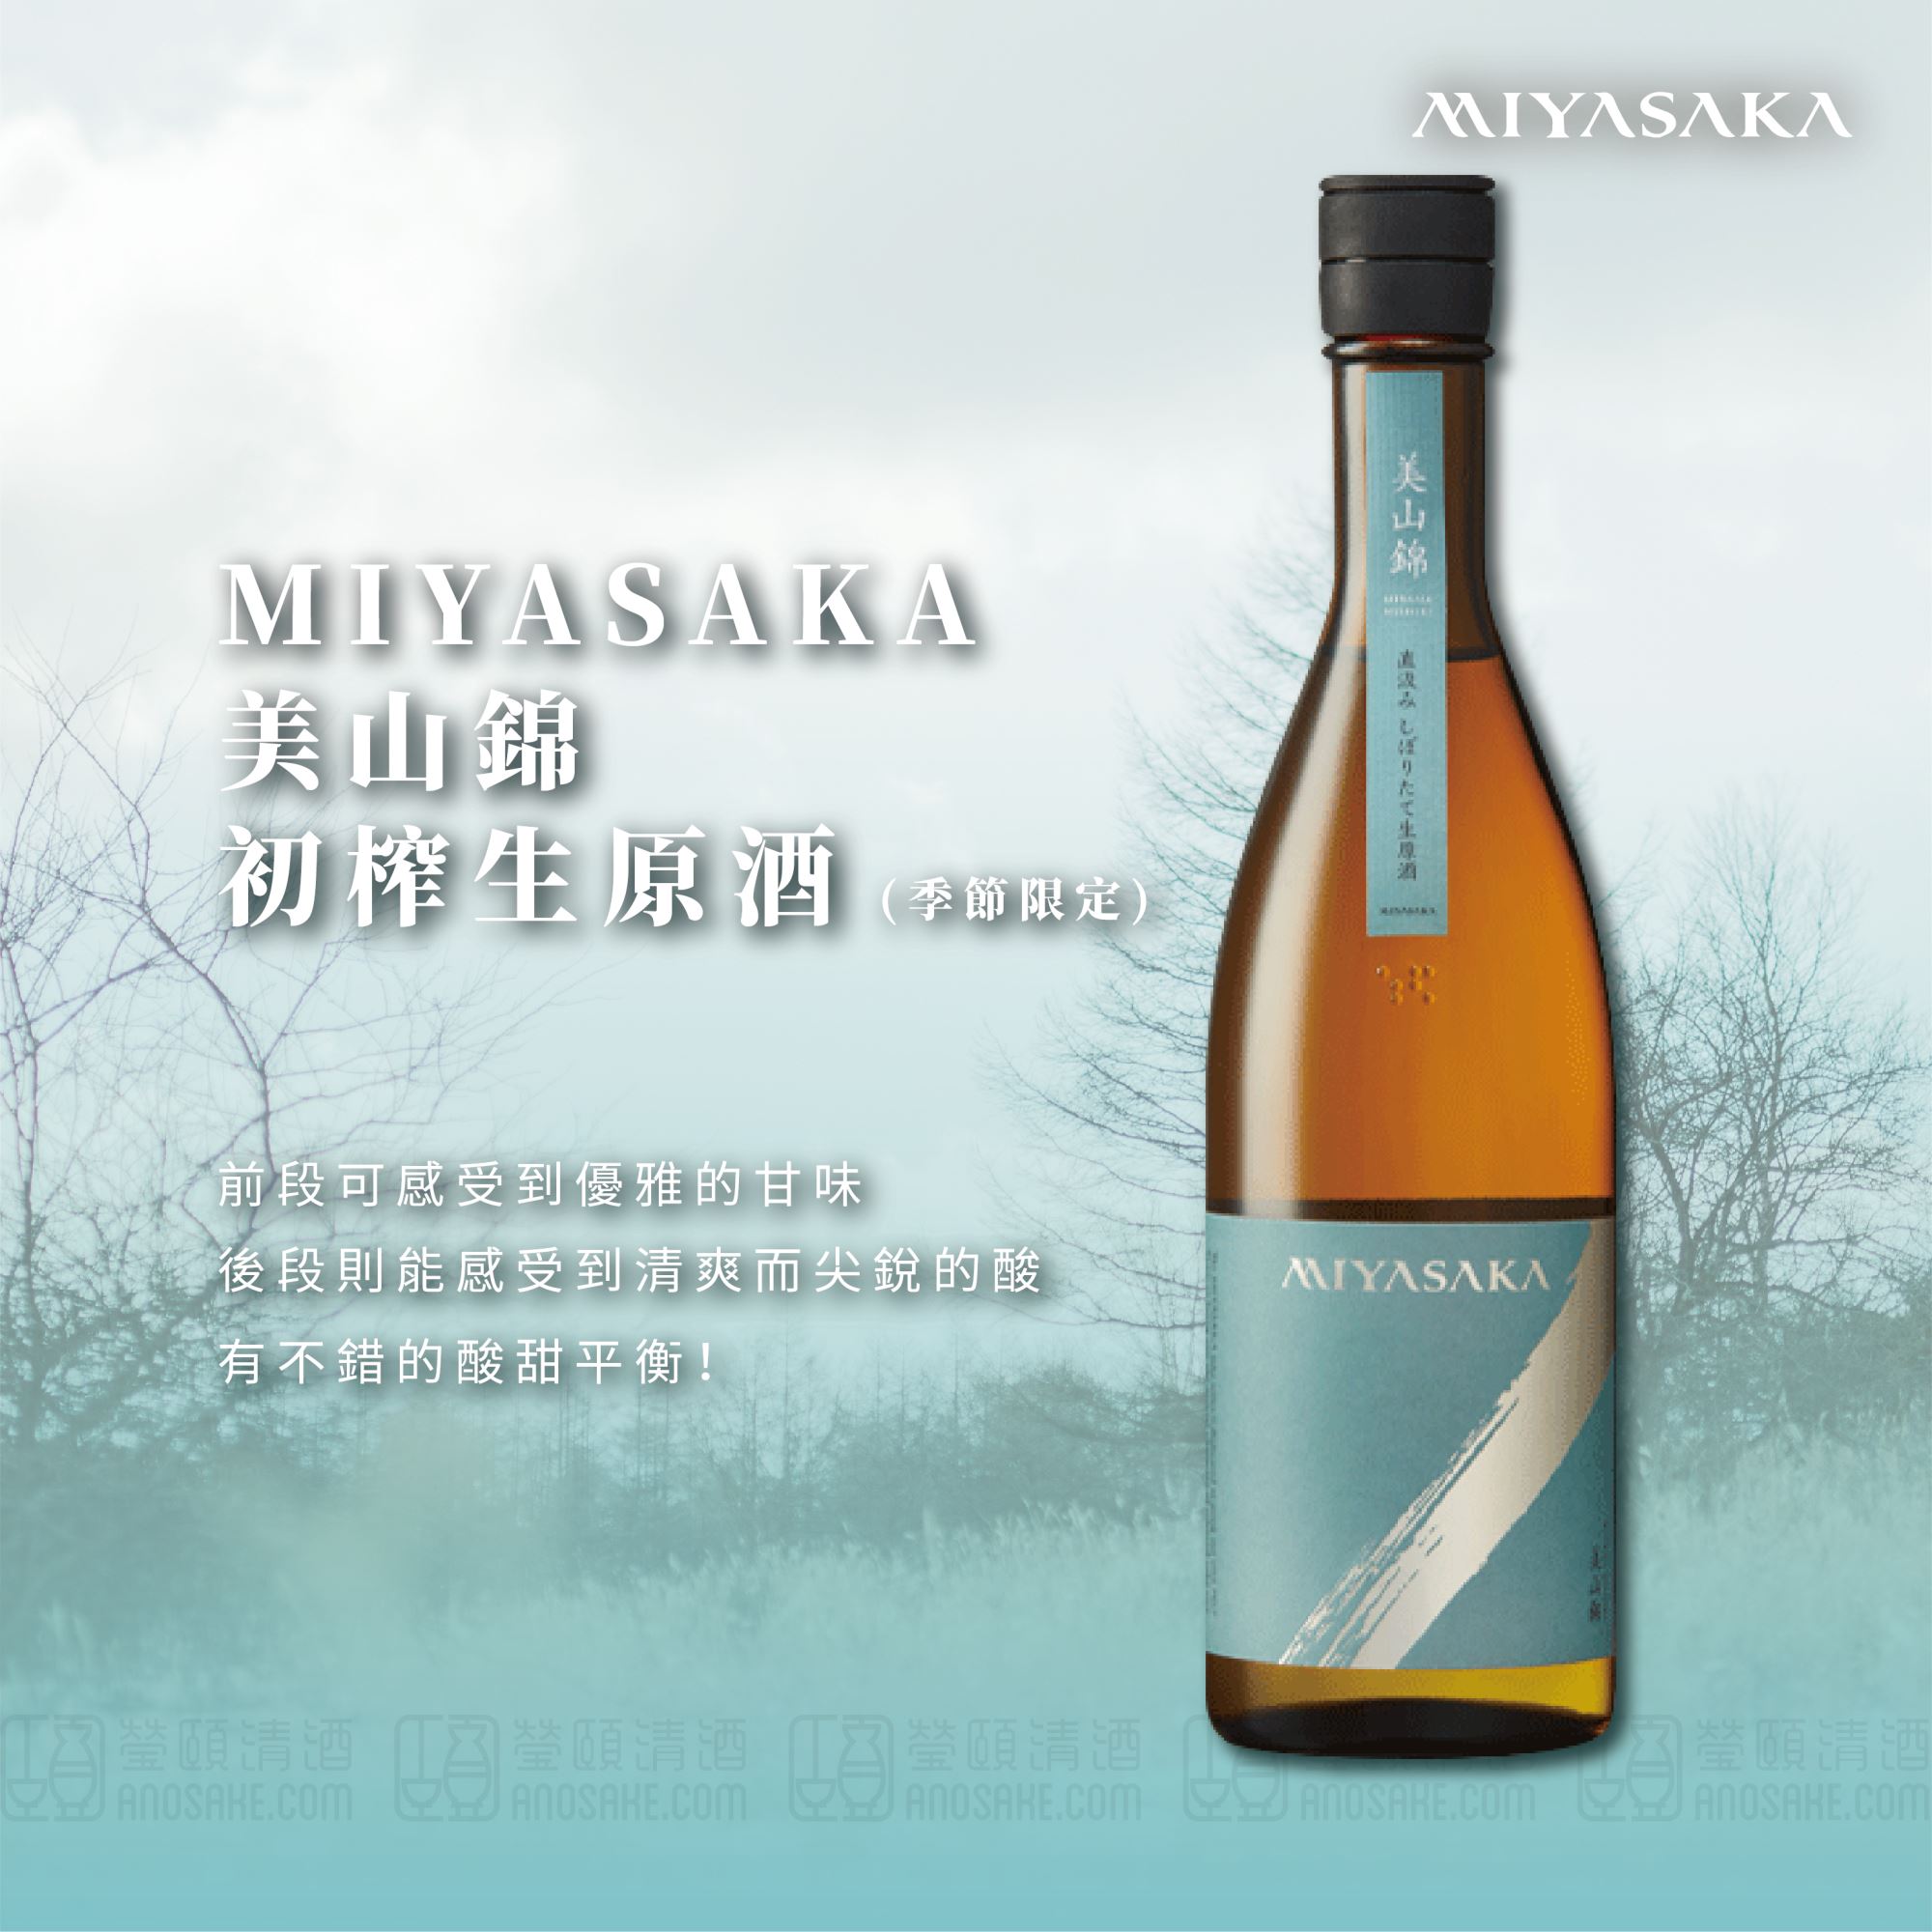 具有7號酵母所特有的柑橘和香蕉系香氣♥♥ MIYASAKA 美山錦 初榨生原酒 (季節限定)